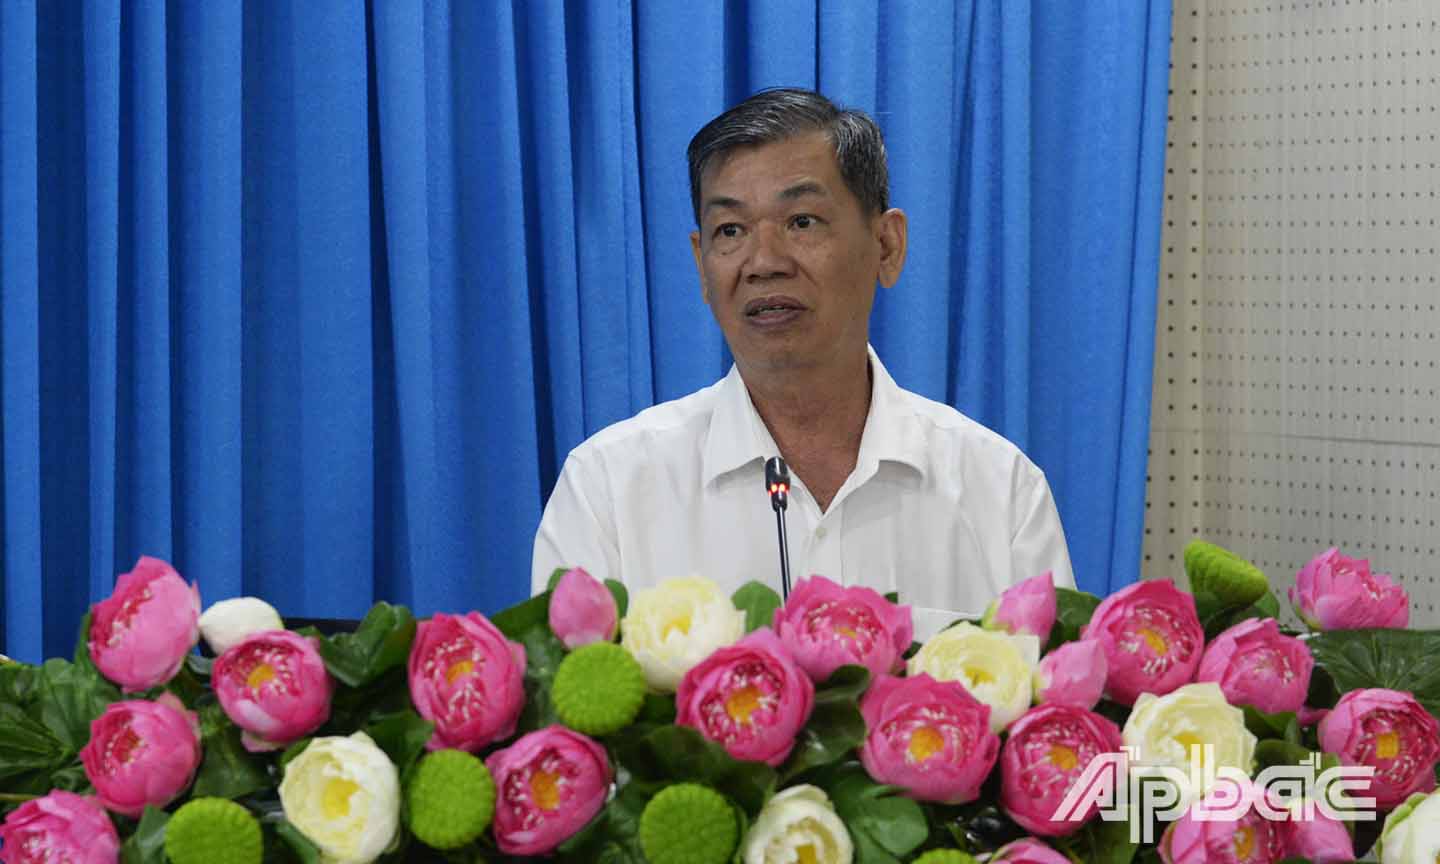 Đồng chí Nguyễn Văn Mẫn phát biểu tại Hội nghị.